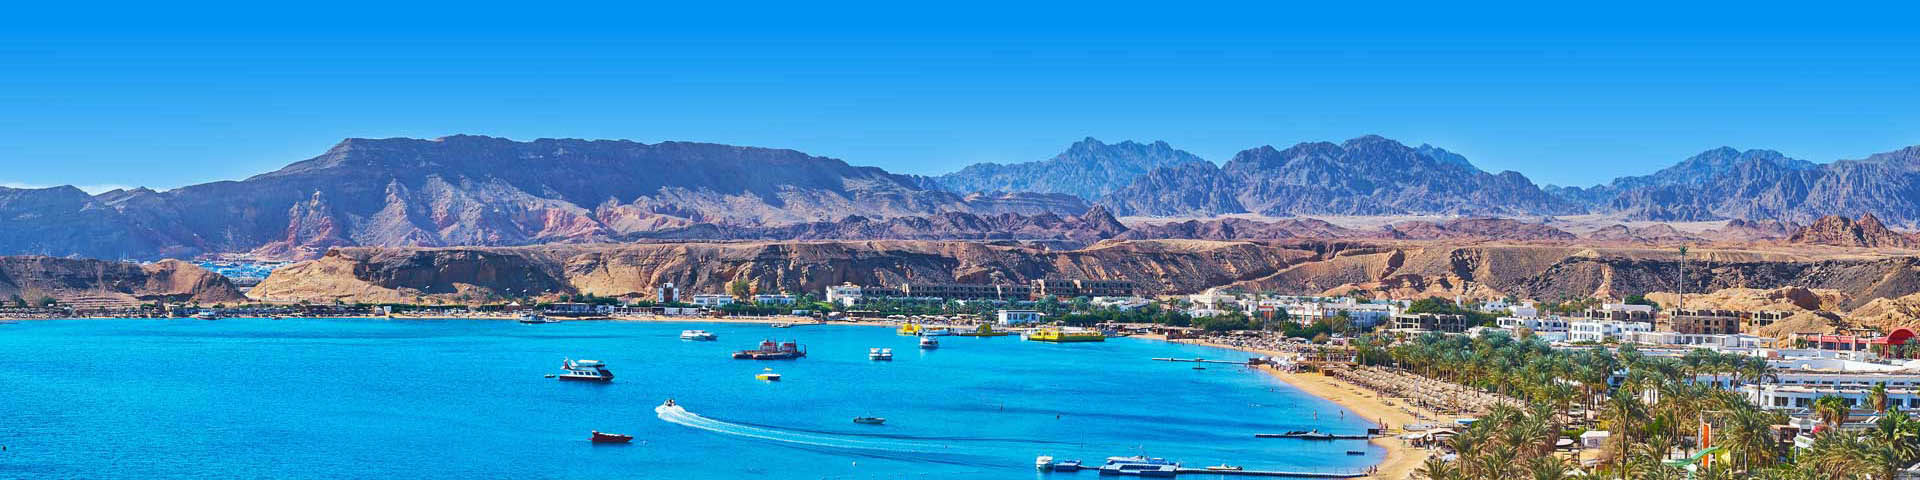 De blauwe zee en bergen bij Sharm el-Sheikh